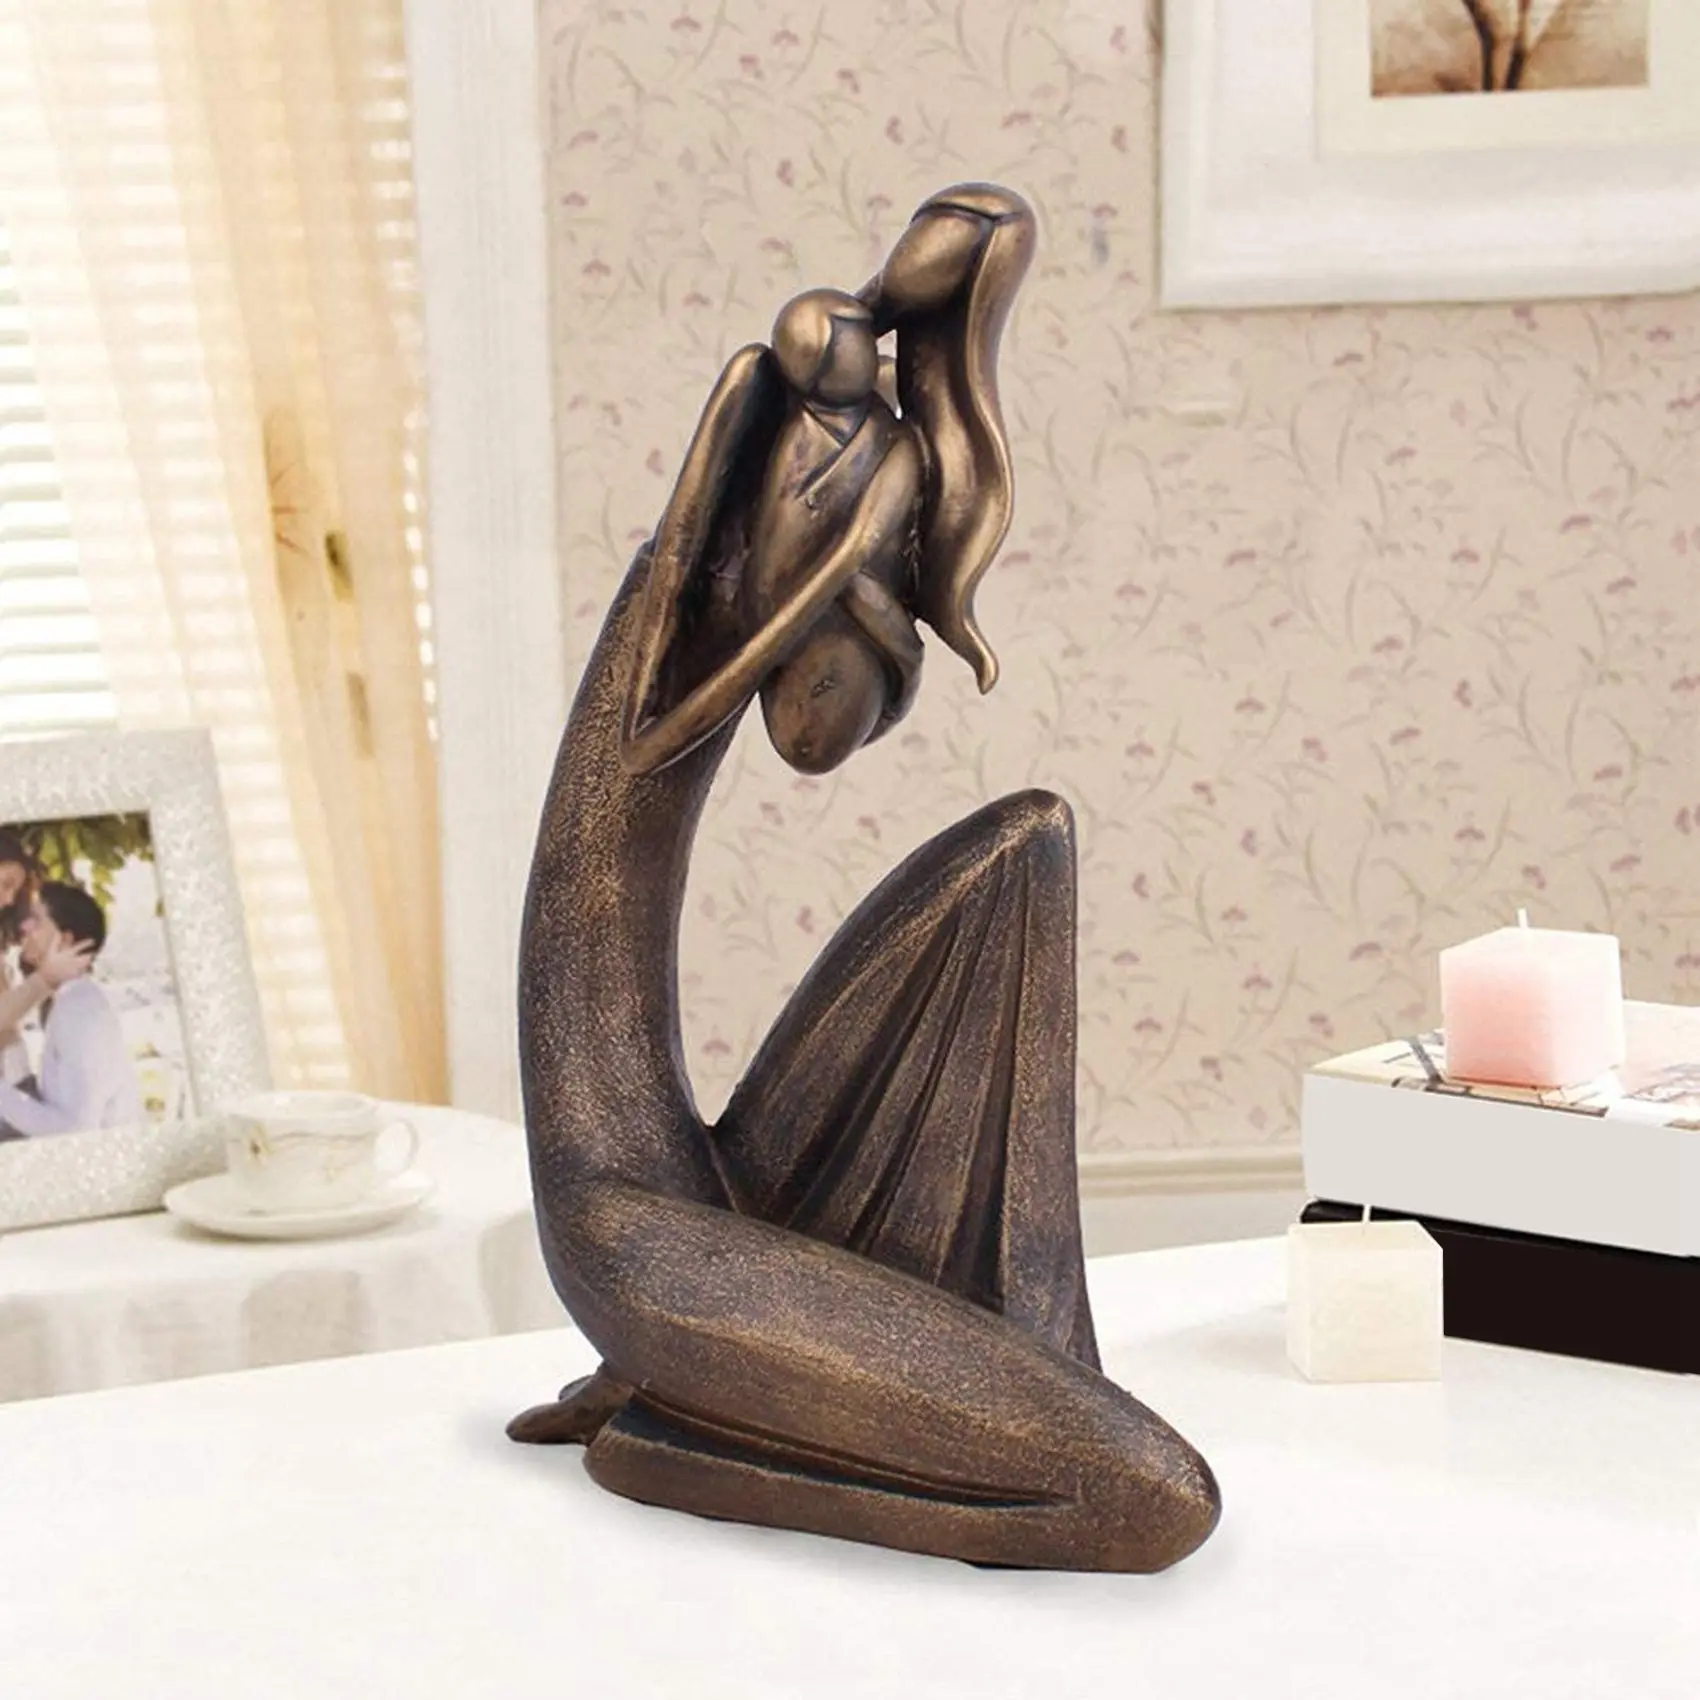 Статуя матери и ребенка, бронзовая скульптура материнской любви, поделки из смолы для гостиной, спальни, кабинета